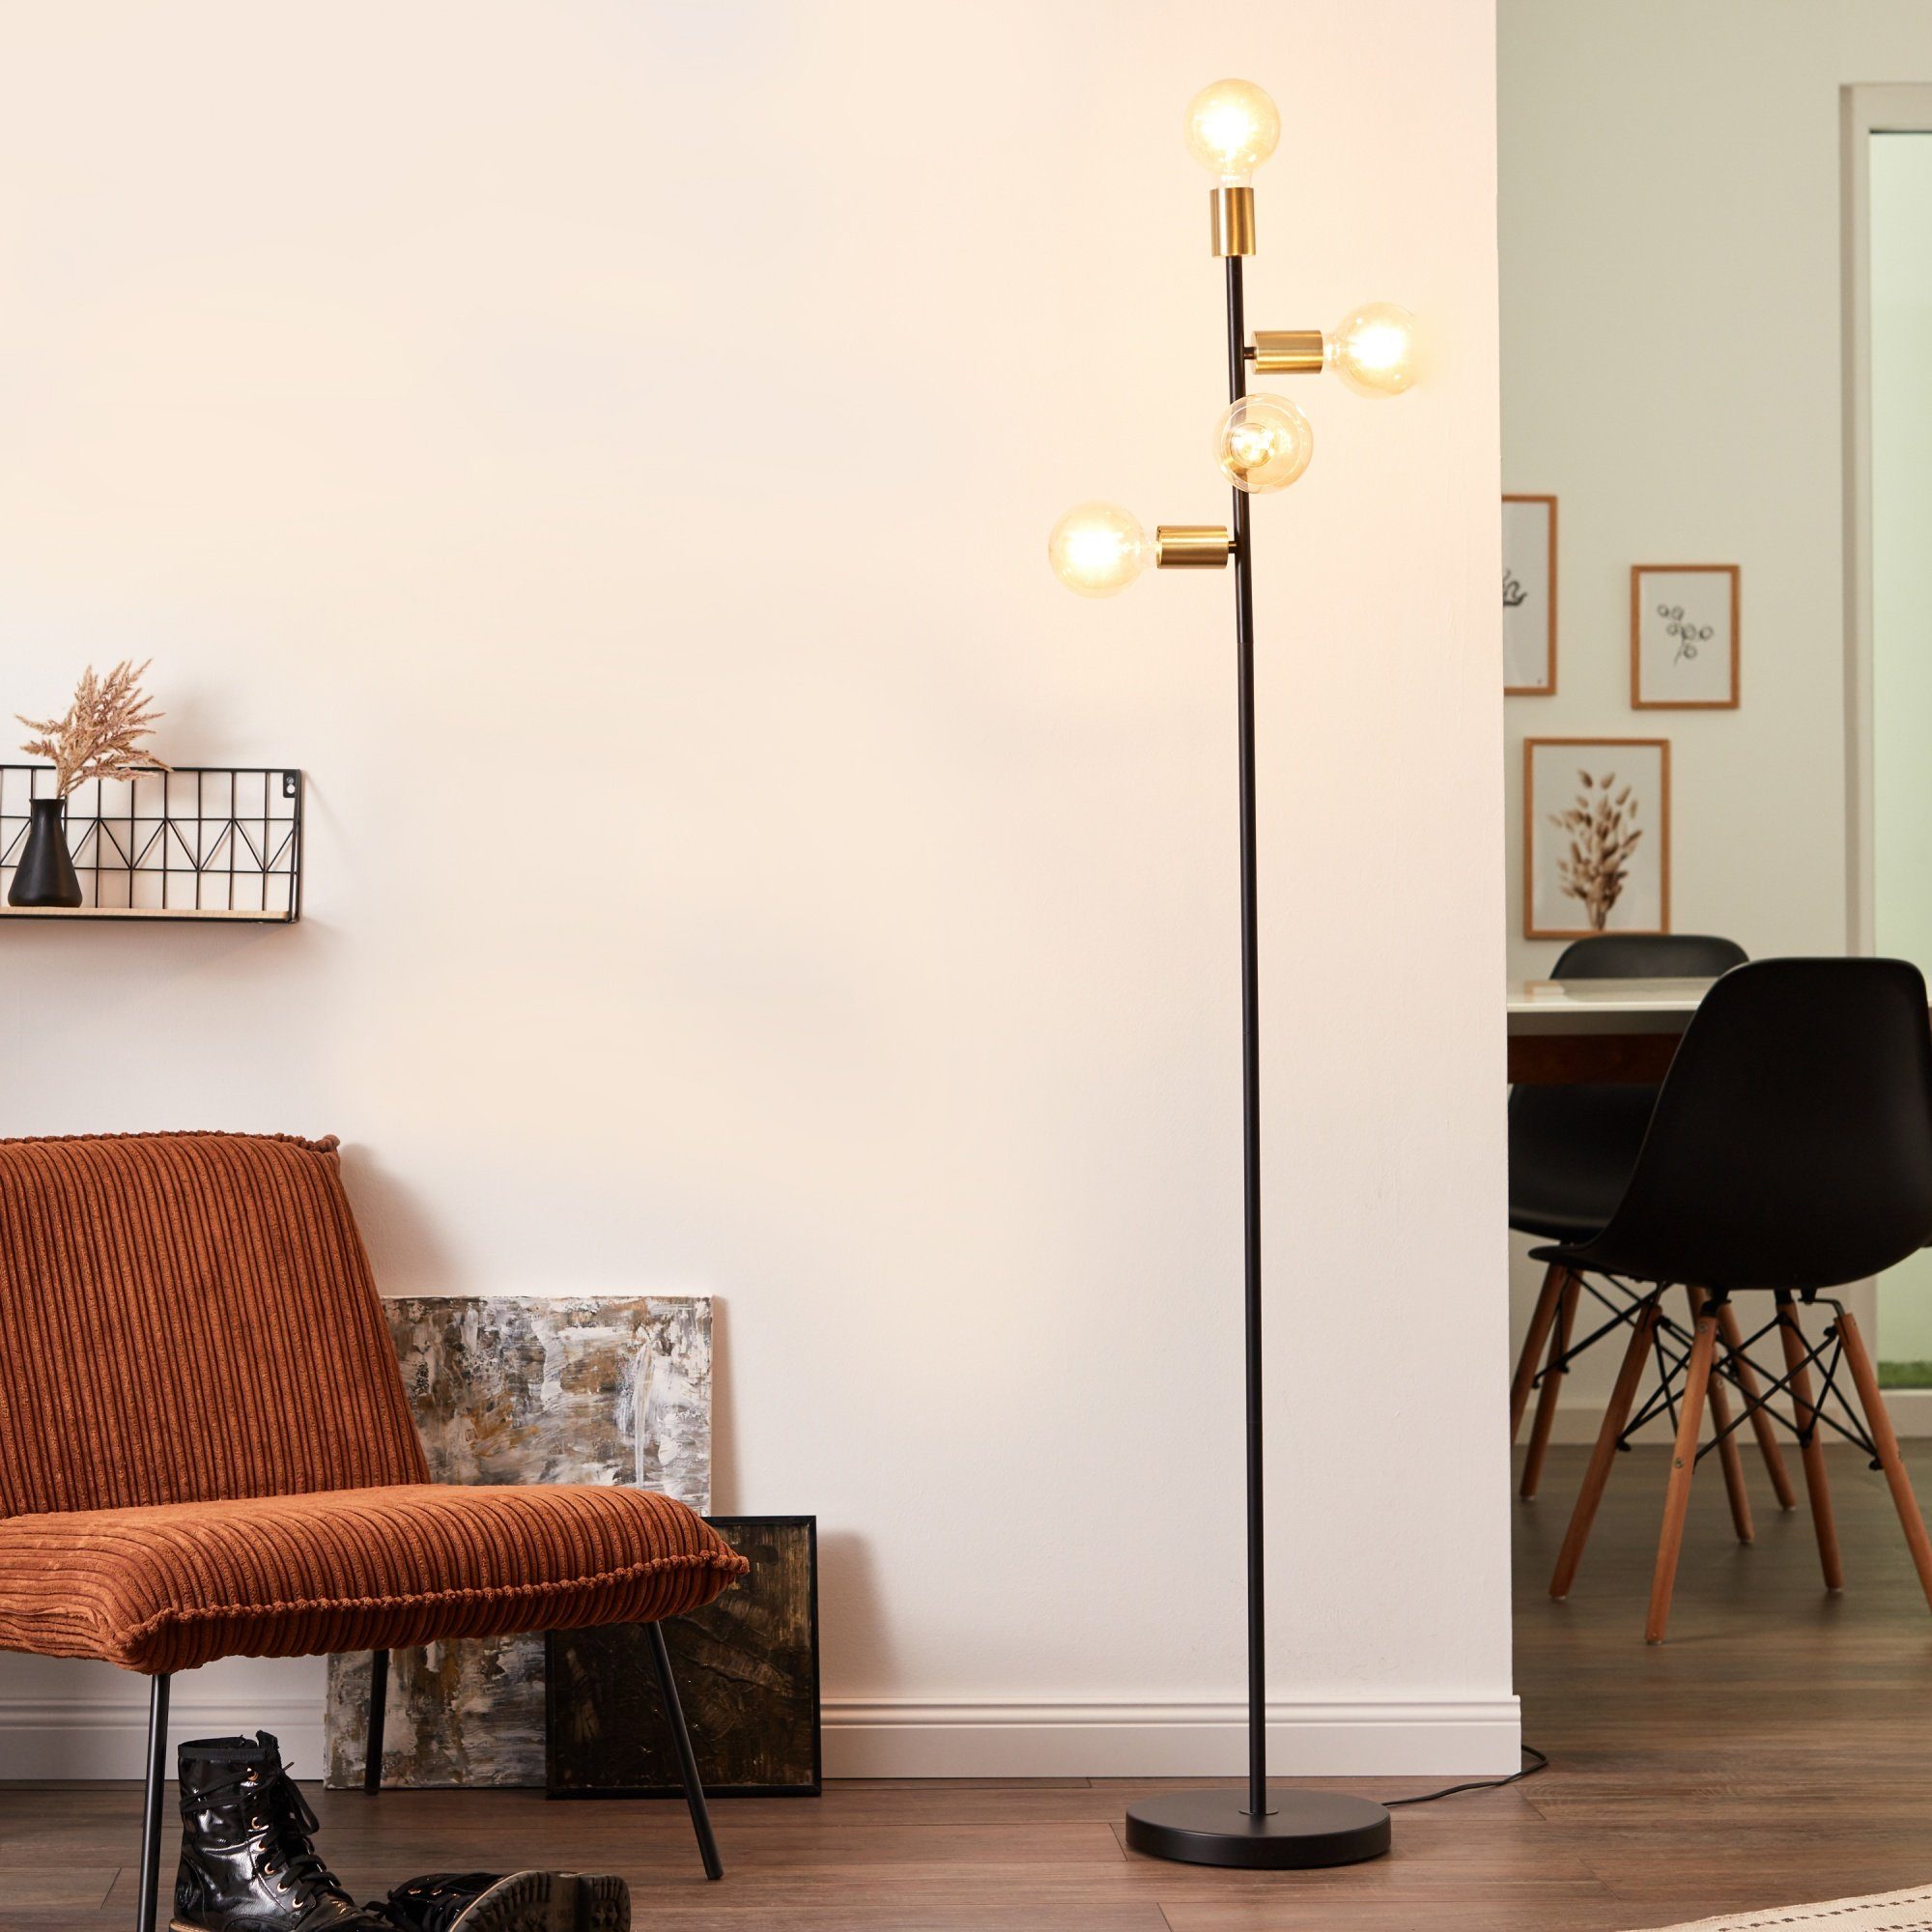 Lightbox Stehlampe, dekorative Standleuchte im Retro Design - Höhe 1,6m - 4  x E27 max. 40W - Metall schwarz/messing gebürstet online kaufen | OTTO